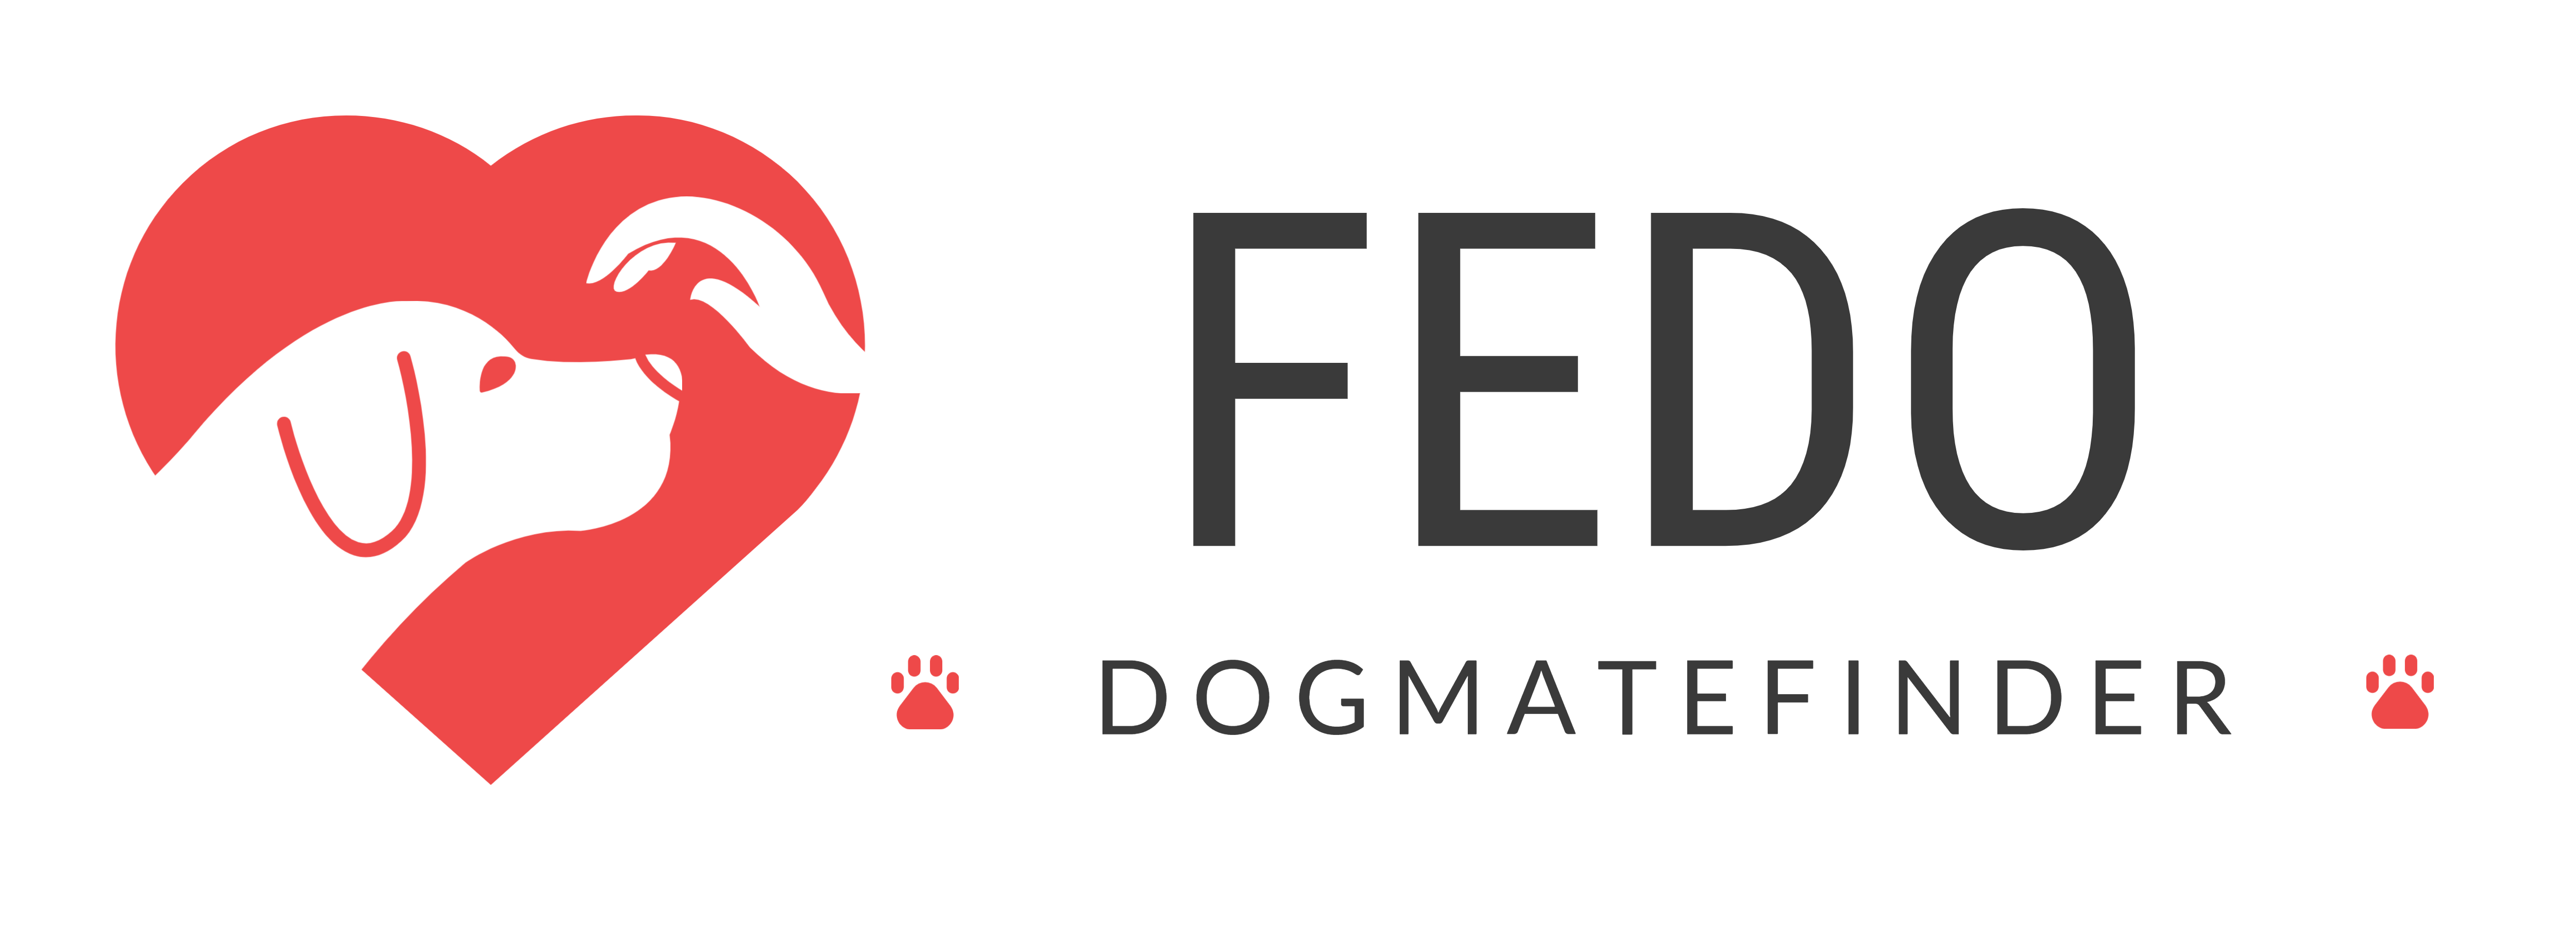 FEDO logo